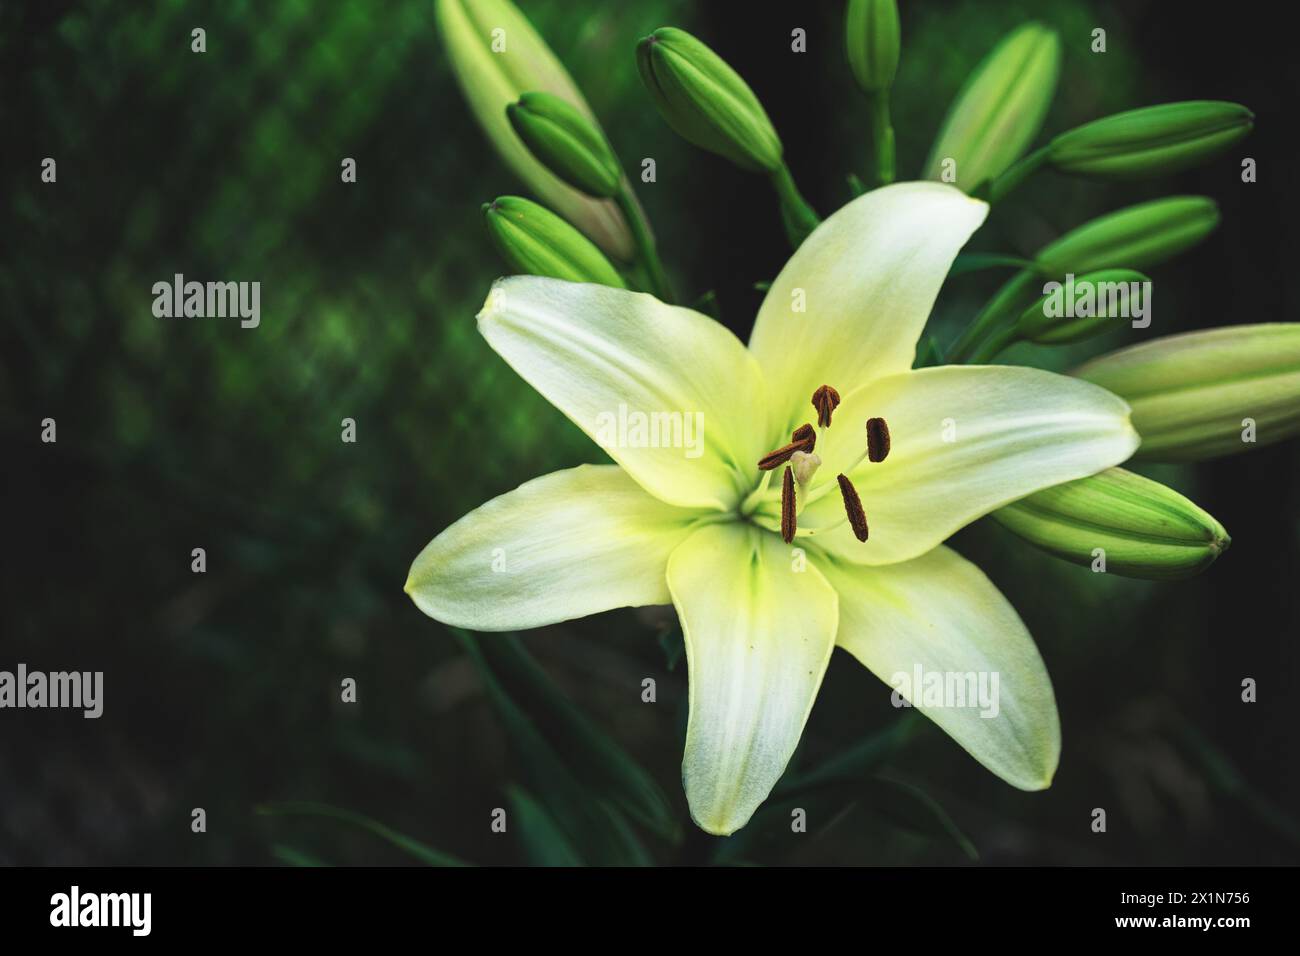 In diesem klaren Bild wird eine einsame Lilie im Grünen festgehalten, die das Wesen des Bauernlebens und die Einfachheit der Natur zeigt. Stockfoto